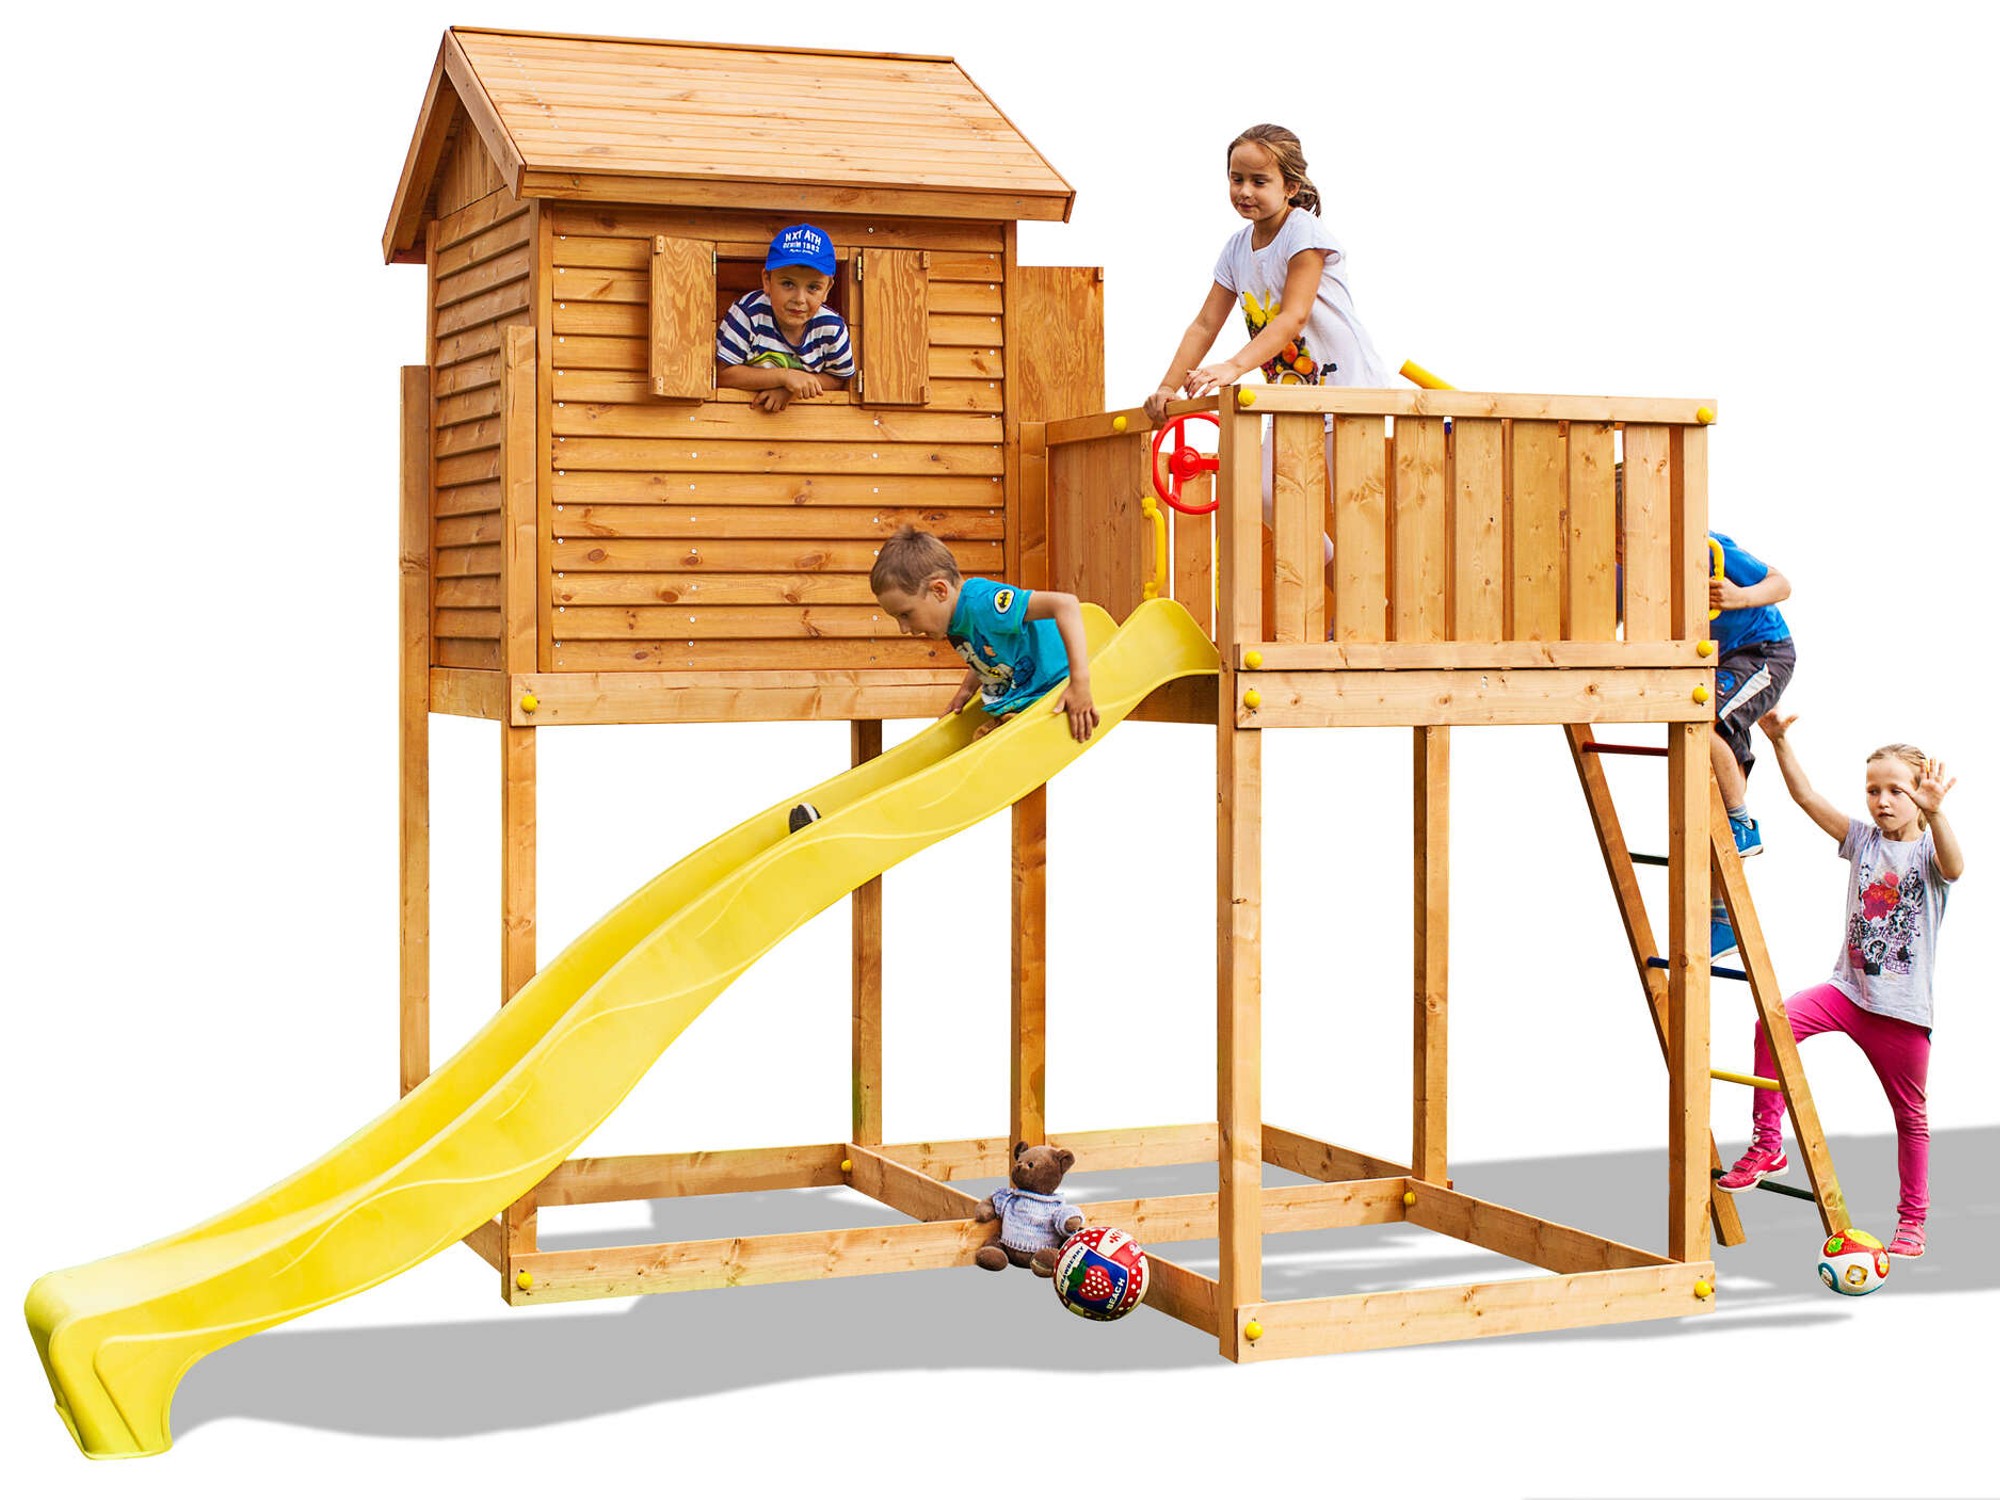 Plac zabaw drewniany ogrodowy My Side domek, zjedalnia, drabinka, akcesoria